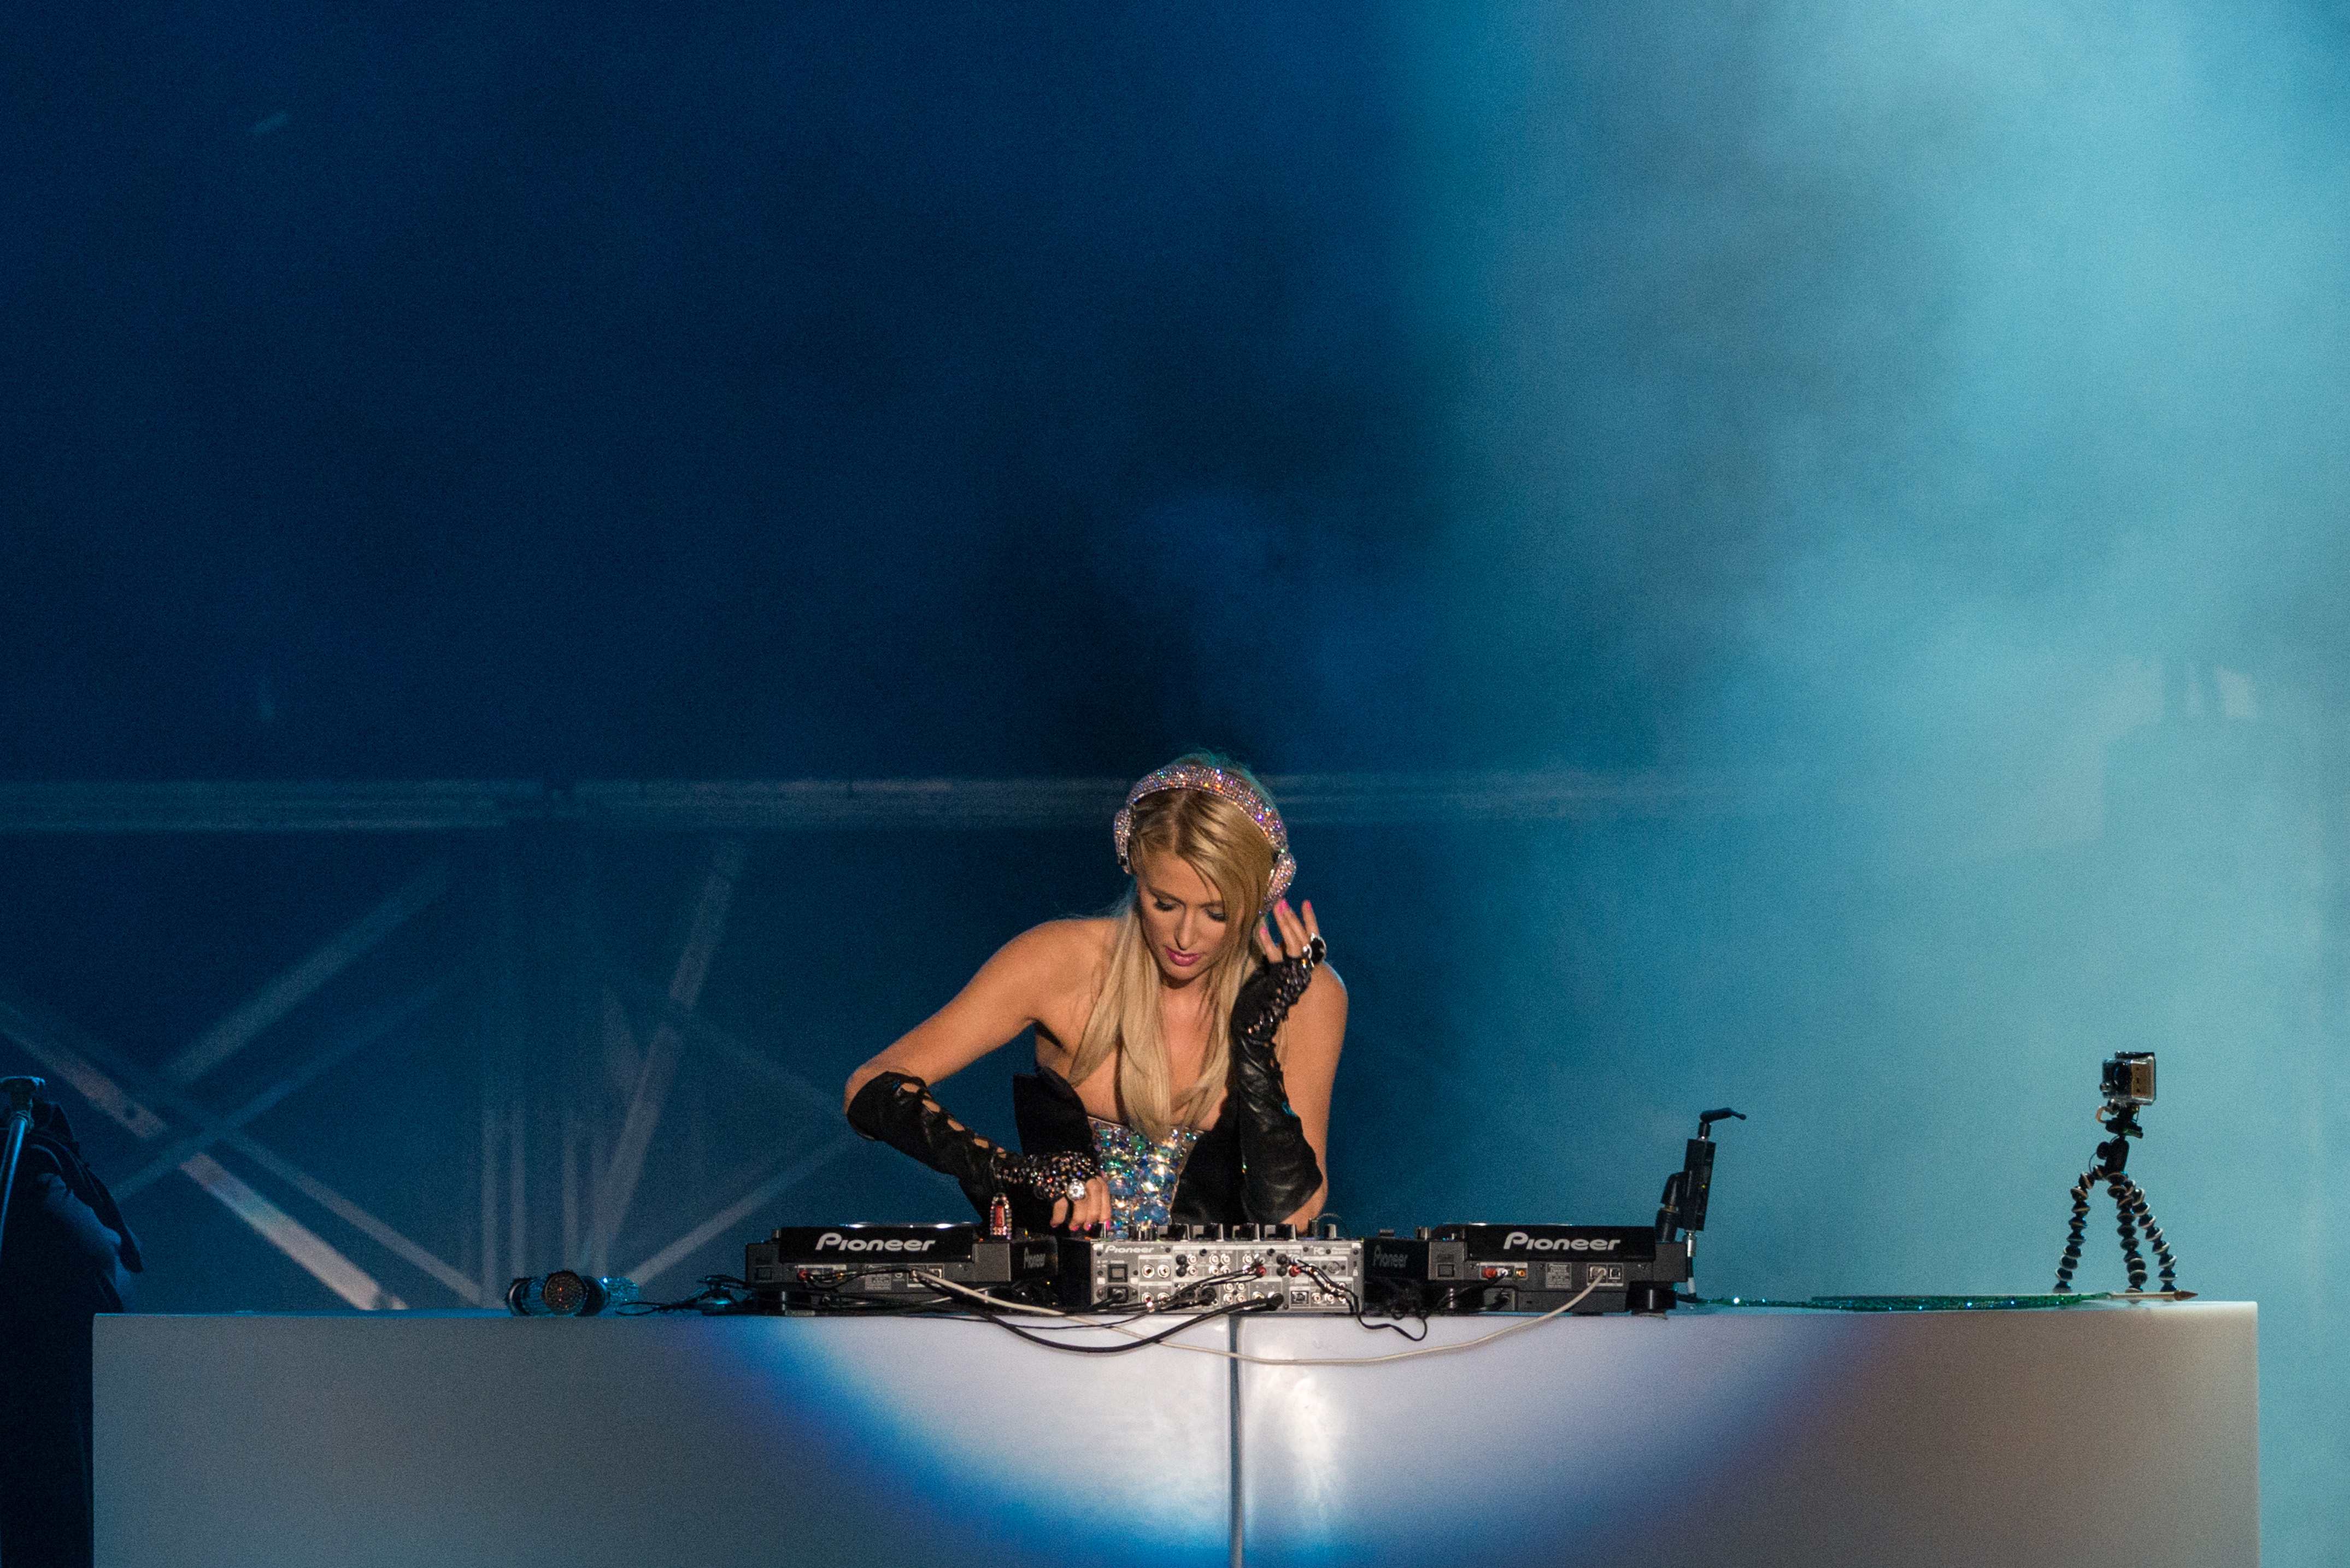 Paris Hilton DJing